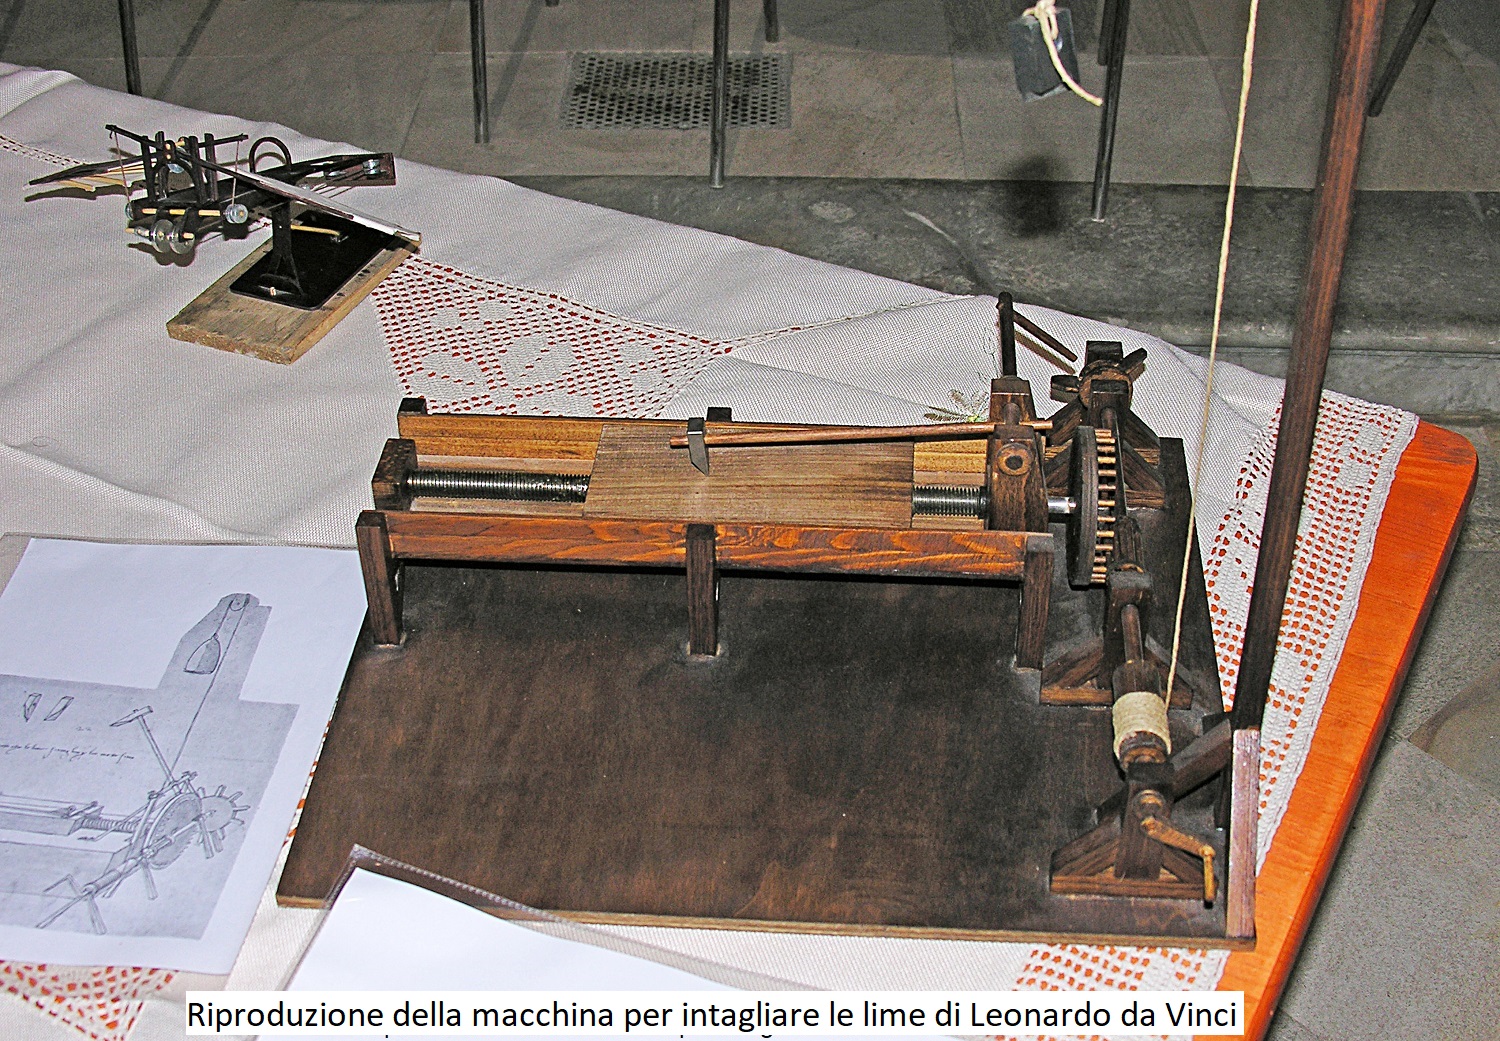 Riproduzione della Macchina per intagliare le lime di Leonardo da Vinci